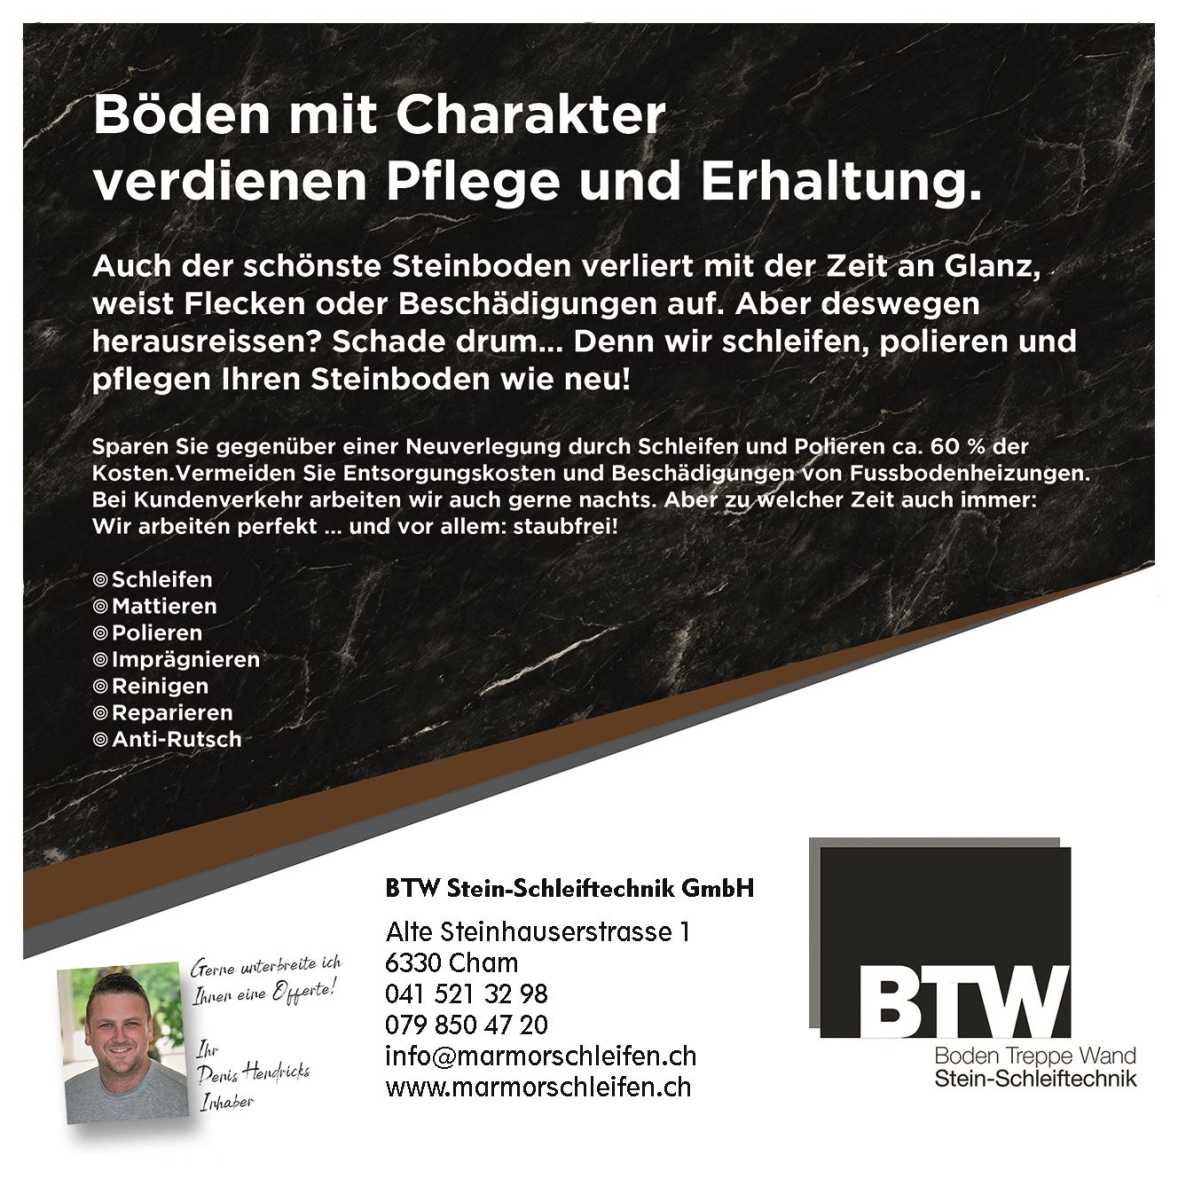 Flyer_BTW Stein-Schleiftechnik seite 1 Marmorschleifen